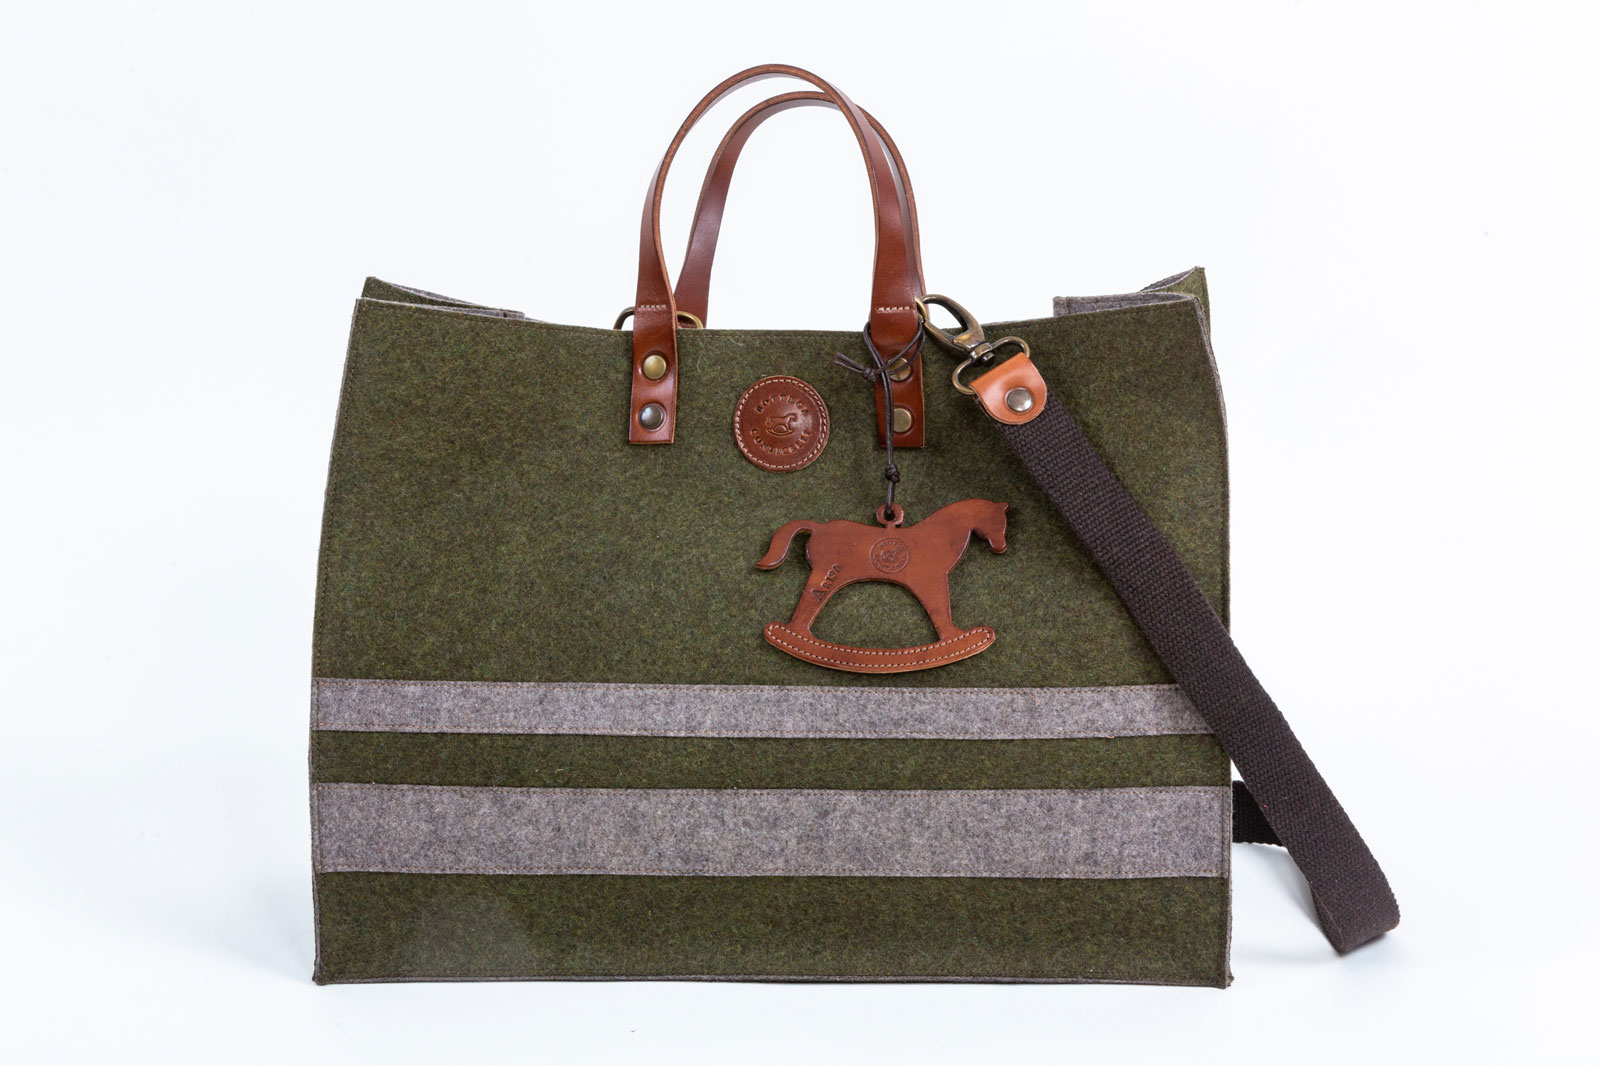 Frank Bag by Bottega Conticelli, borsa in cuoio disponibile in diverse colorazioni